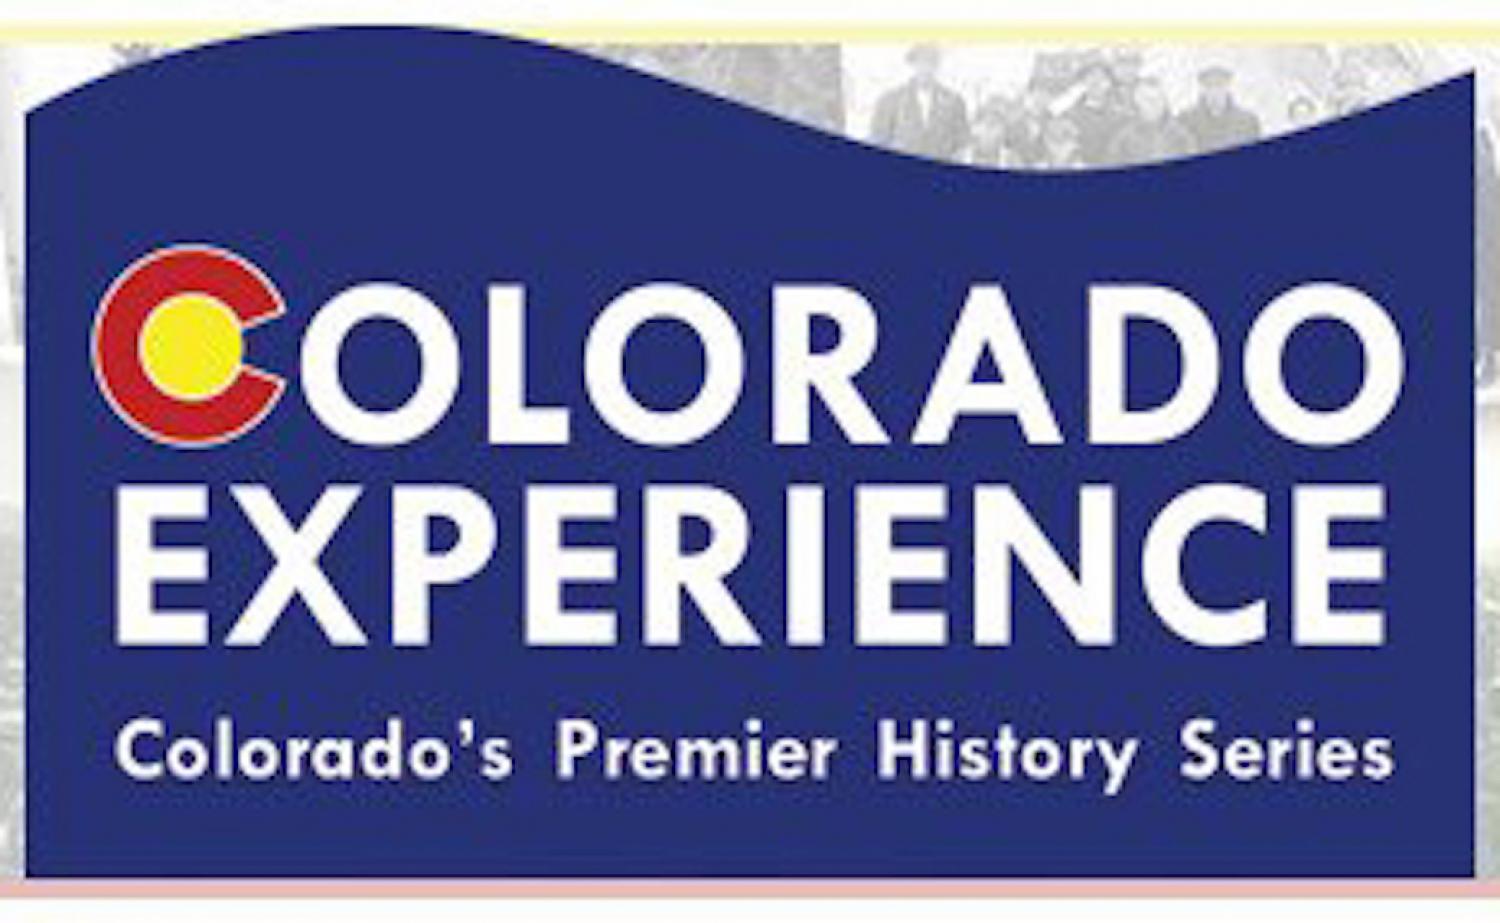 Colorado Experience Colorado's Premier History Series